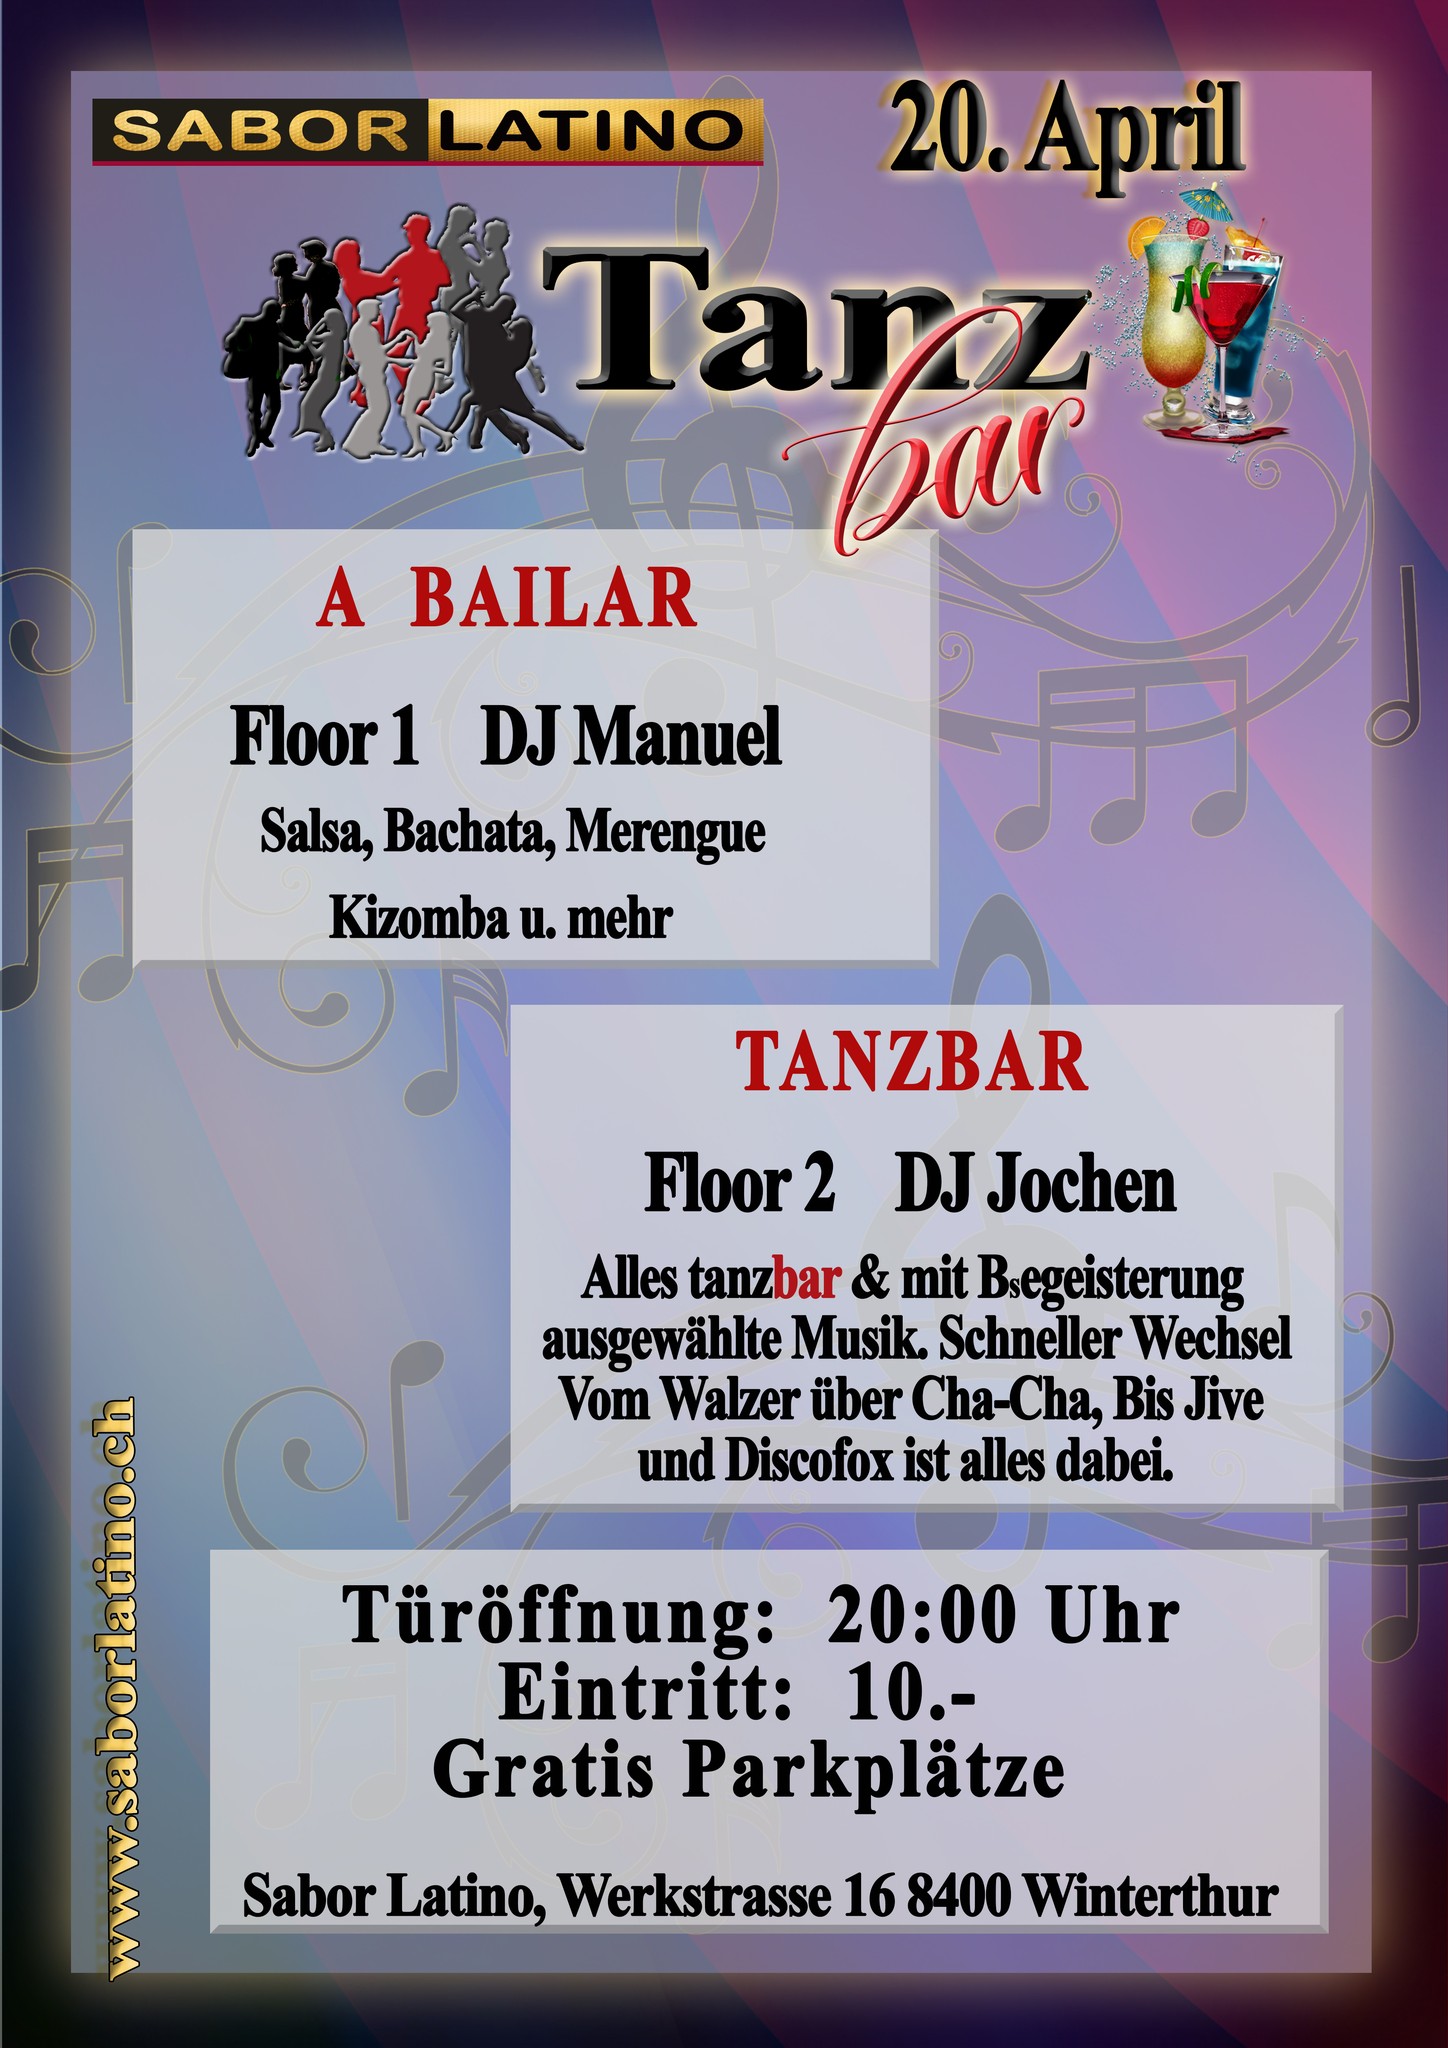 A BAILAR  &   TANZ-BAR     Floor 1:  Salsa Bachata und Co.   / Floor 2:  Standard von Walzer, Tango zu Jive usw.)